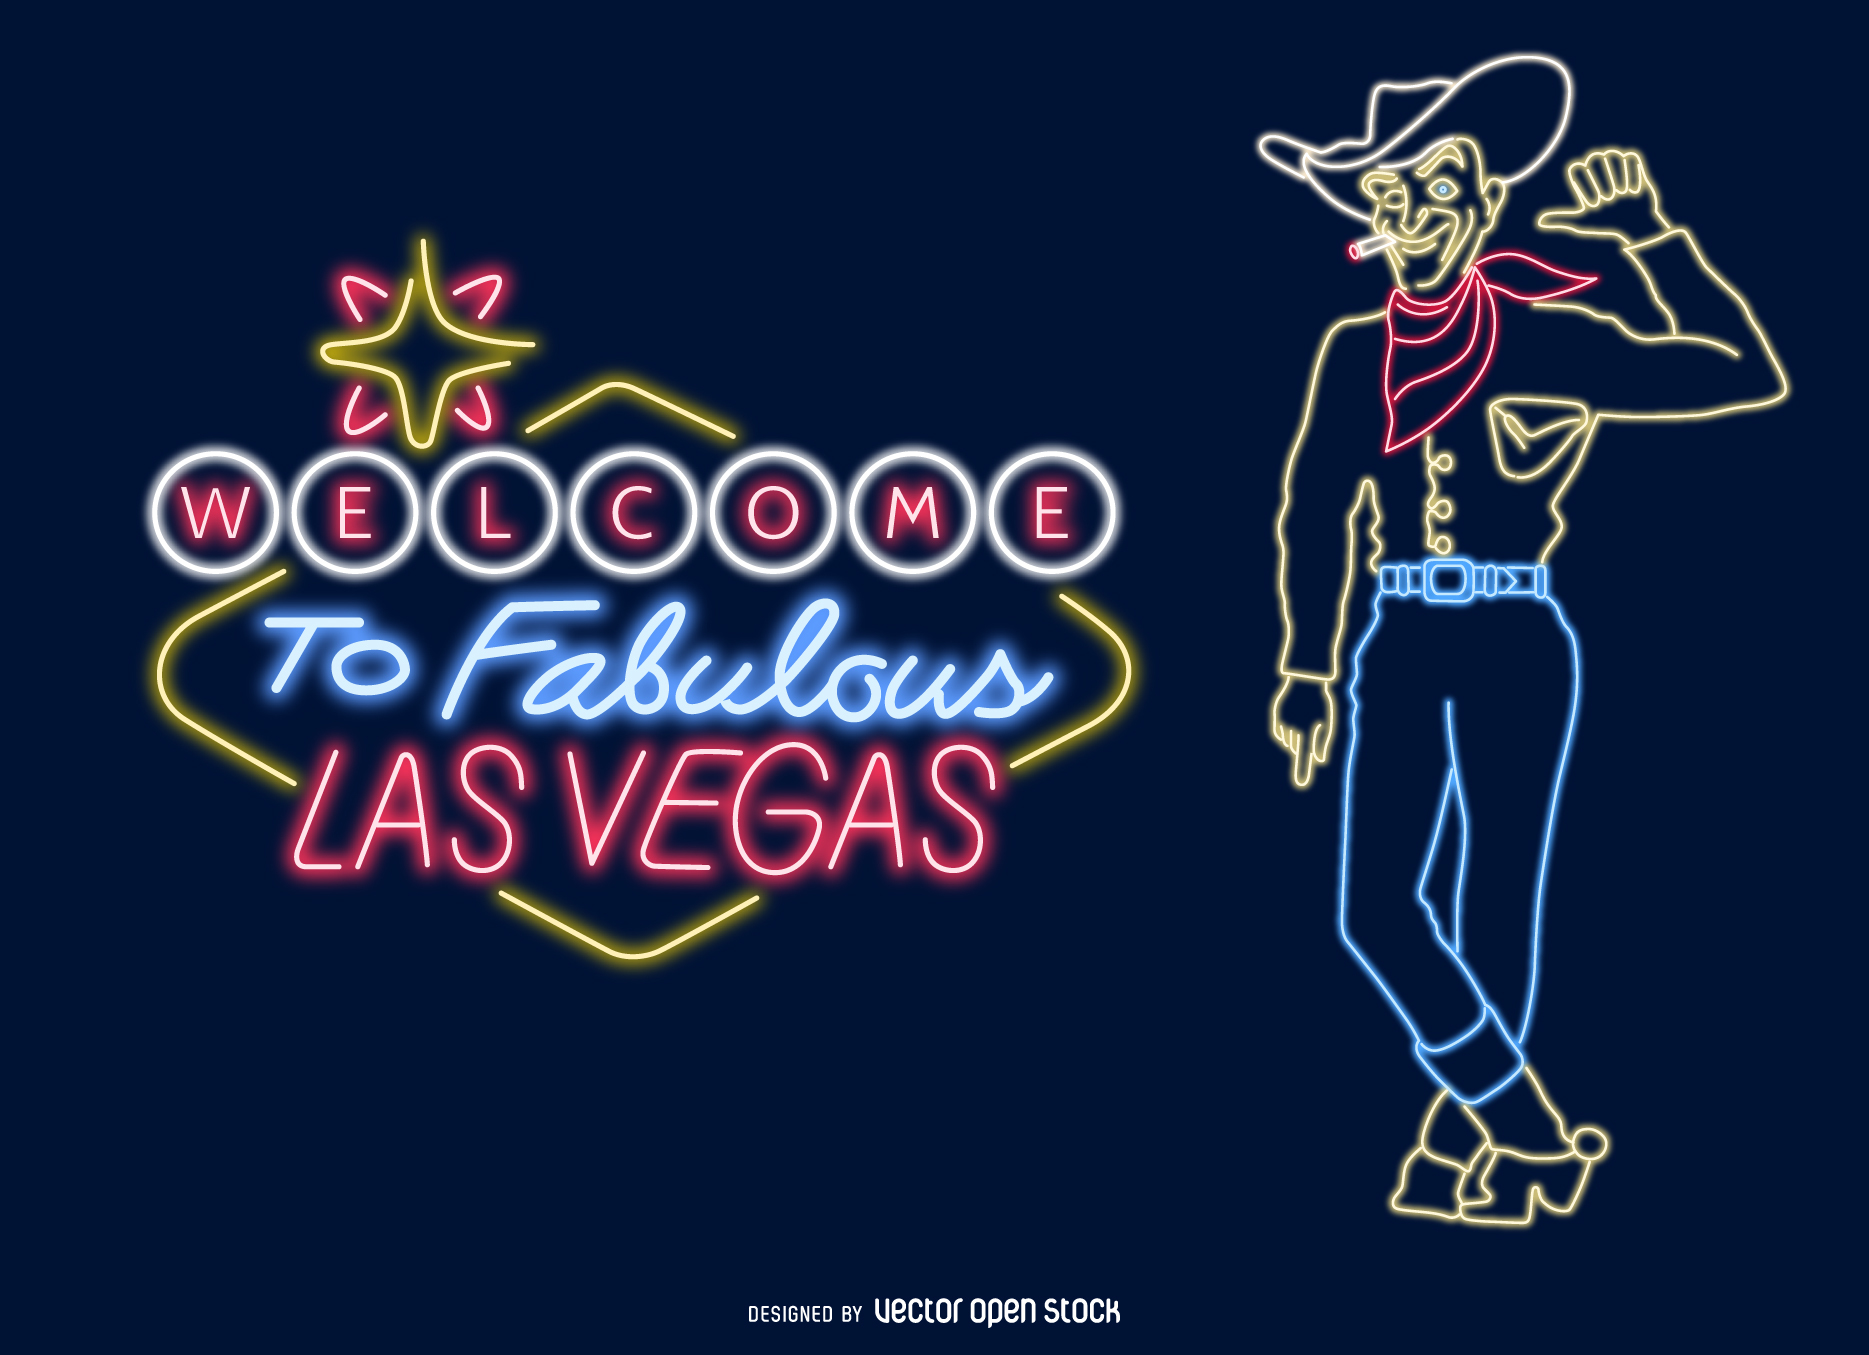 Las Vegas neon signs - Vector download